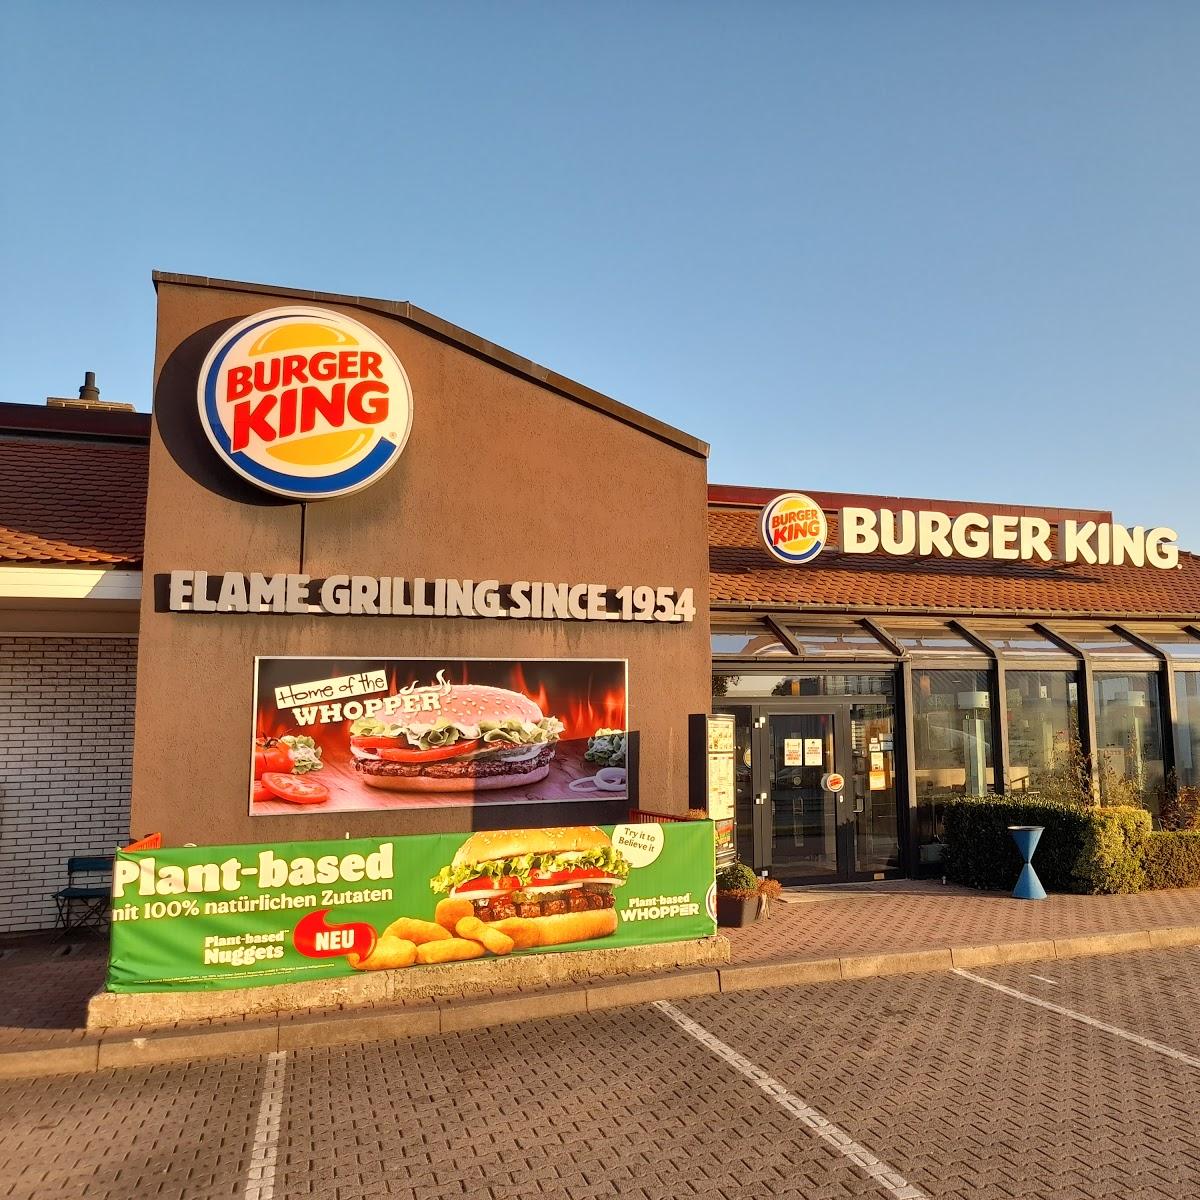 Restaurant "Burger King" in Kaiserslautern